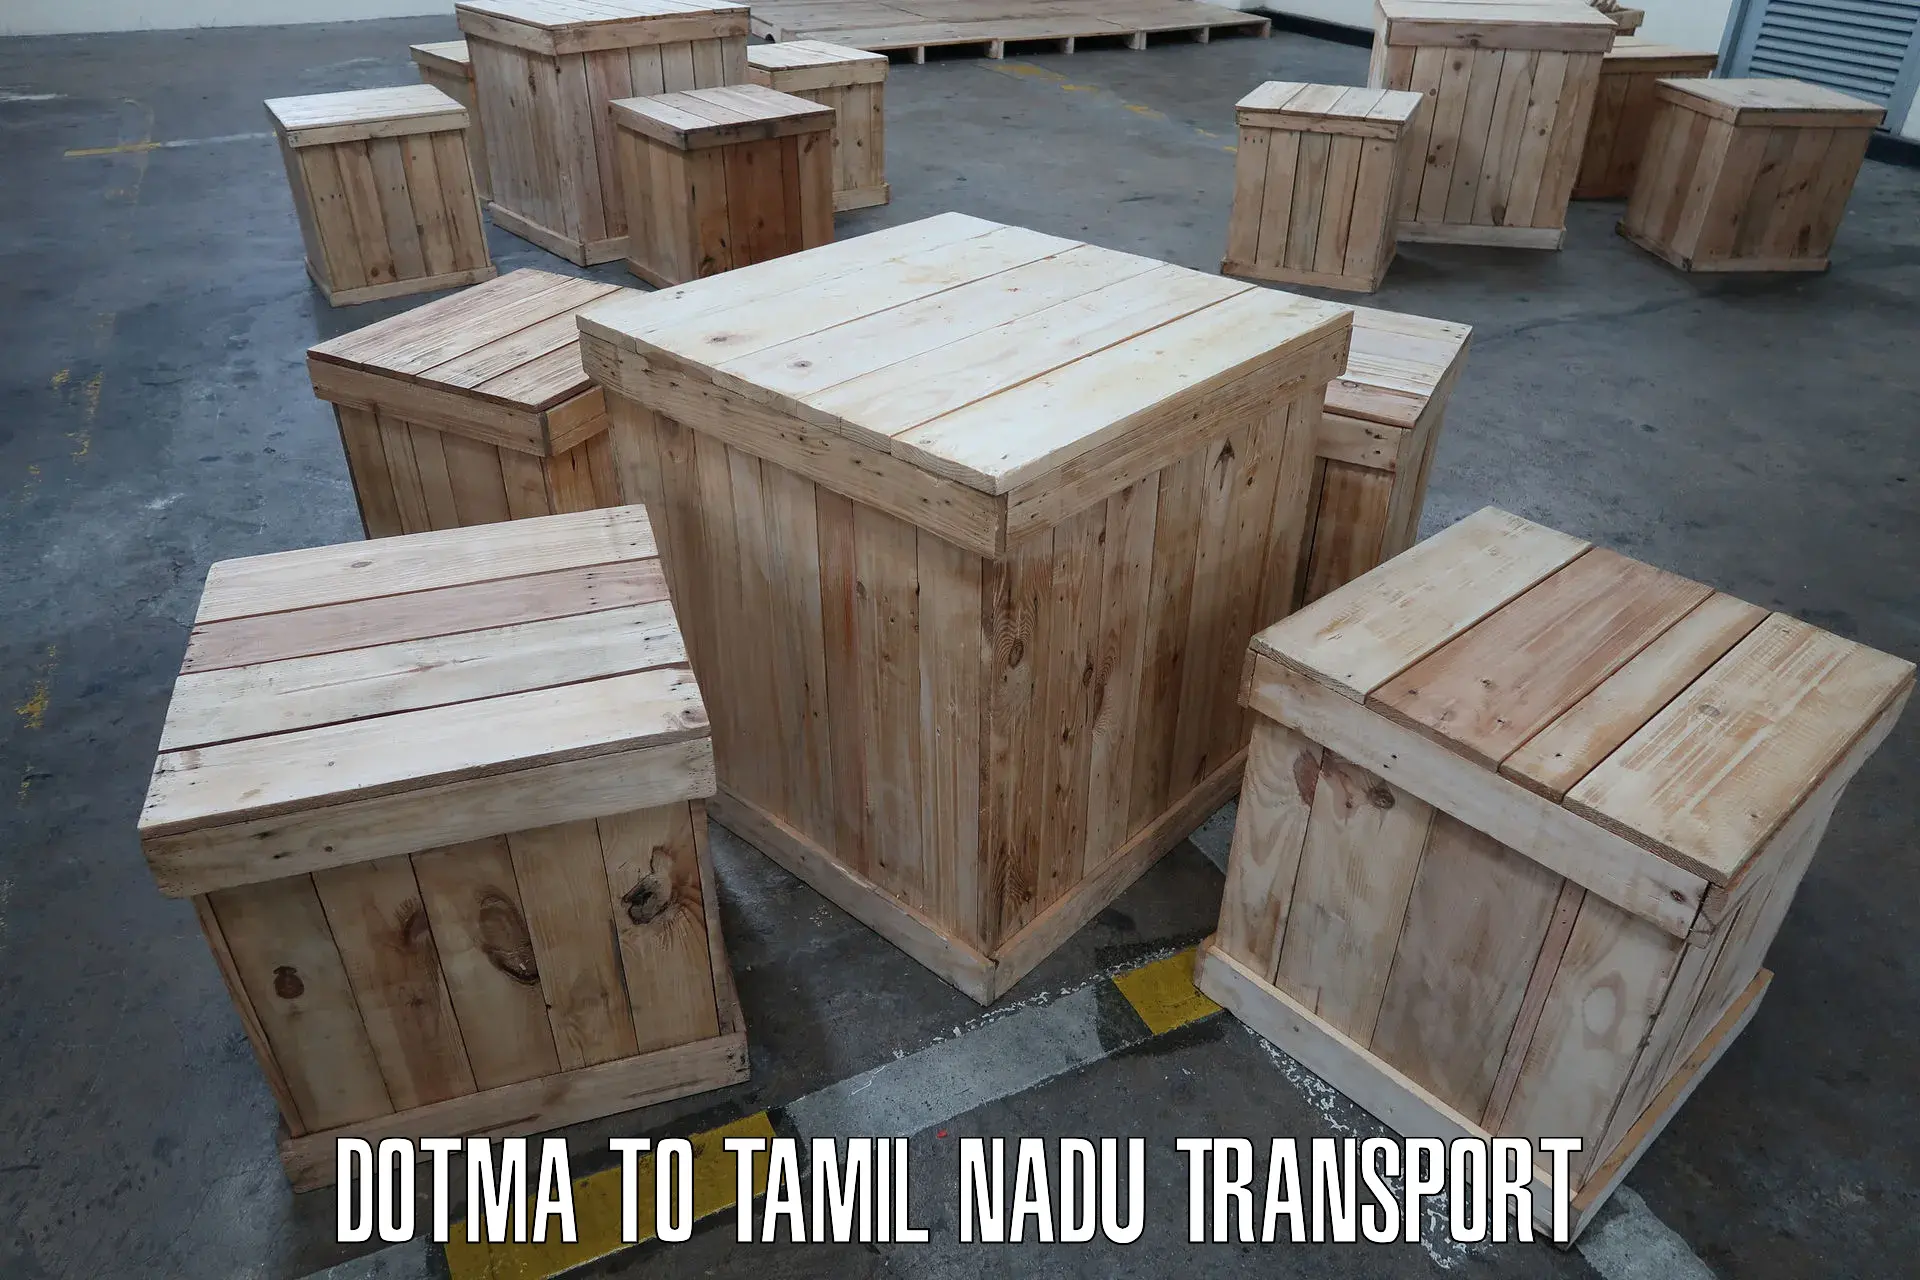 Daily transport service Dotma to Perundurai